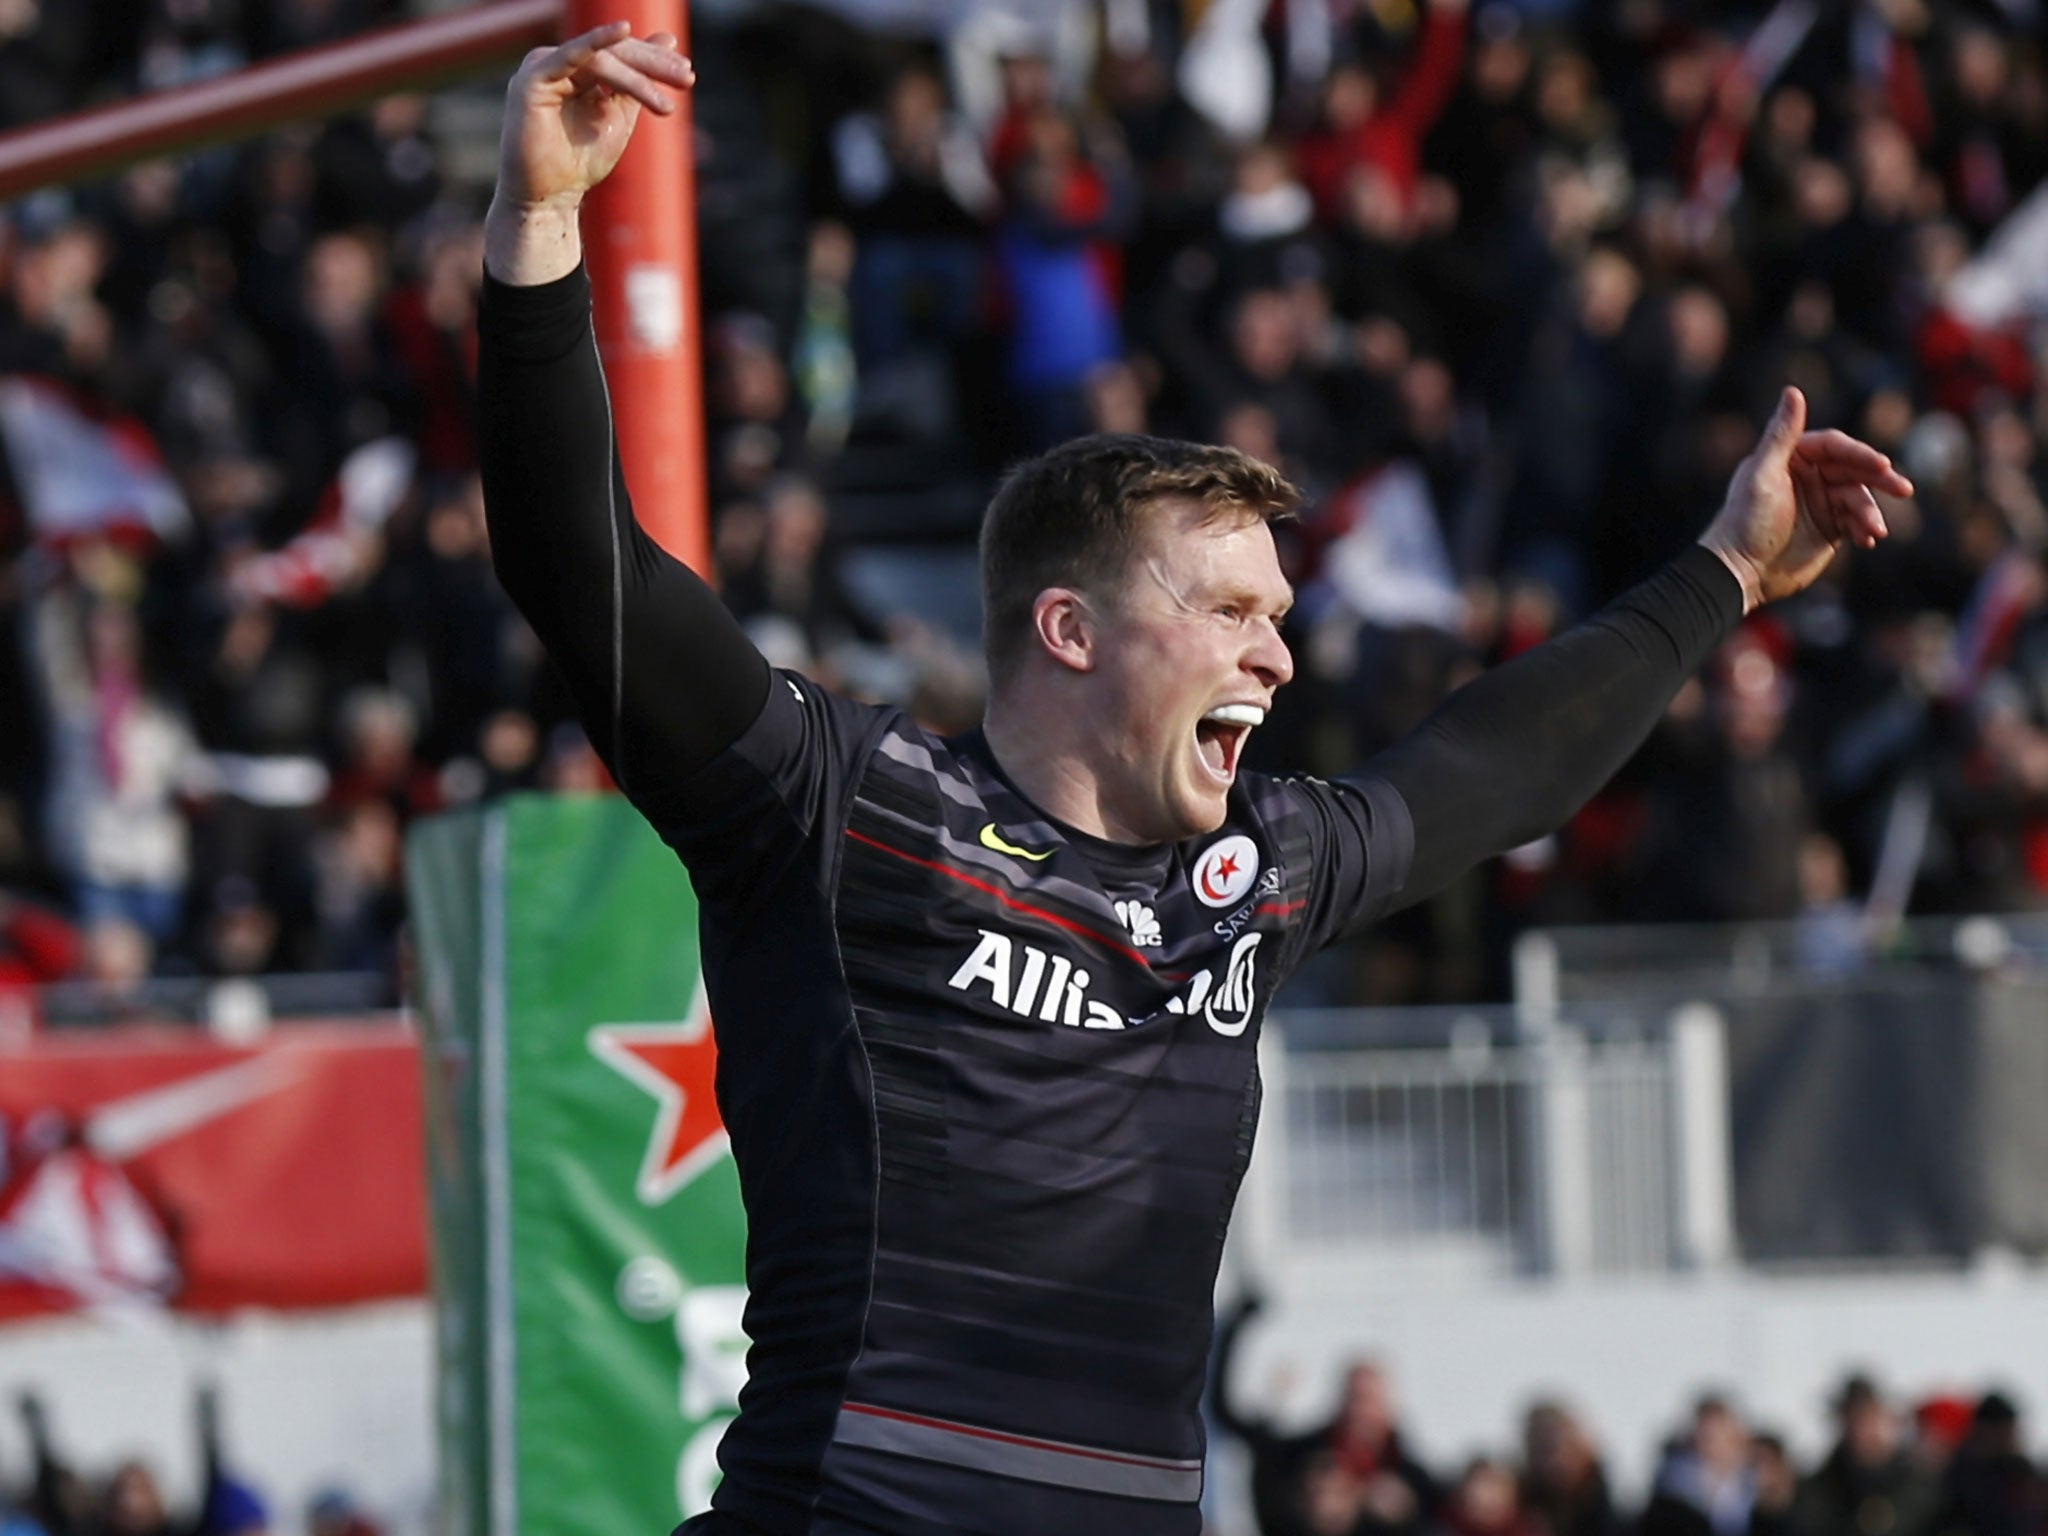 Chris Ashton celebrates a try against Munster